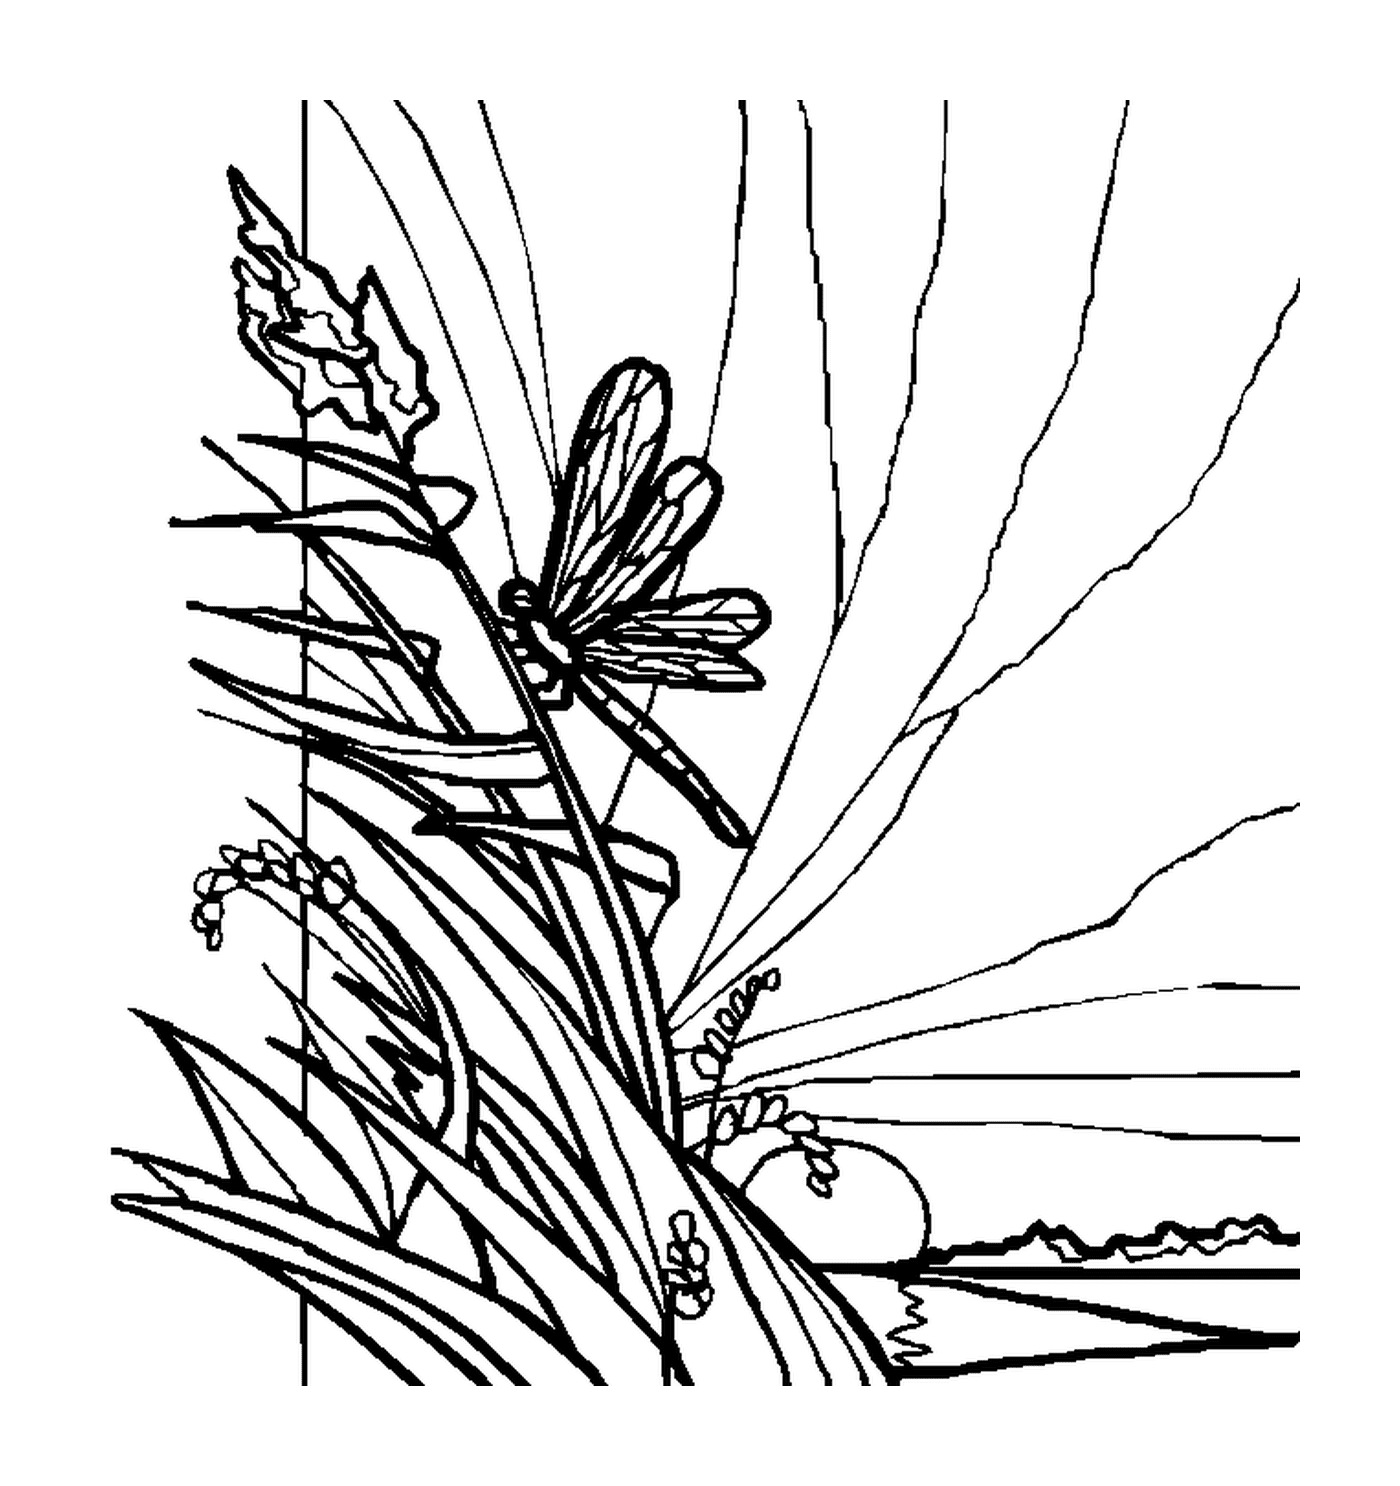  Una libellula posta sulla vegetazione 